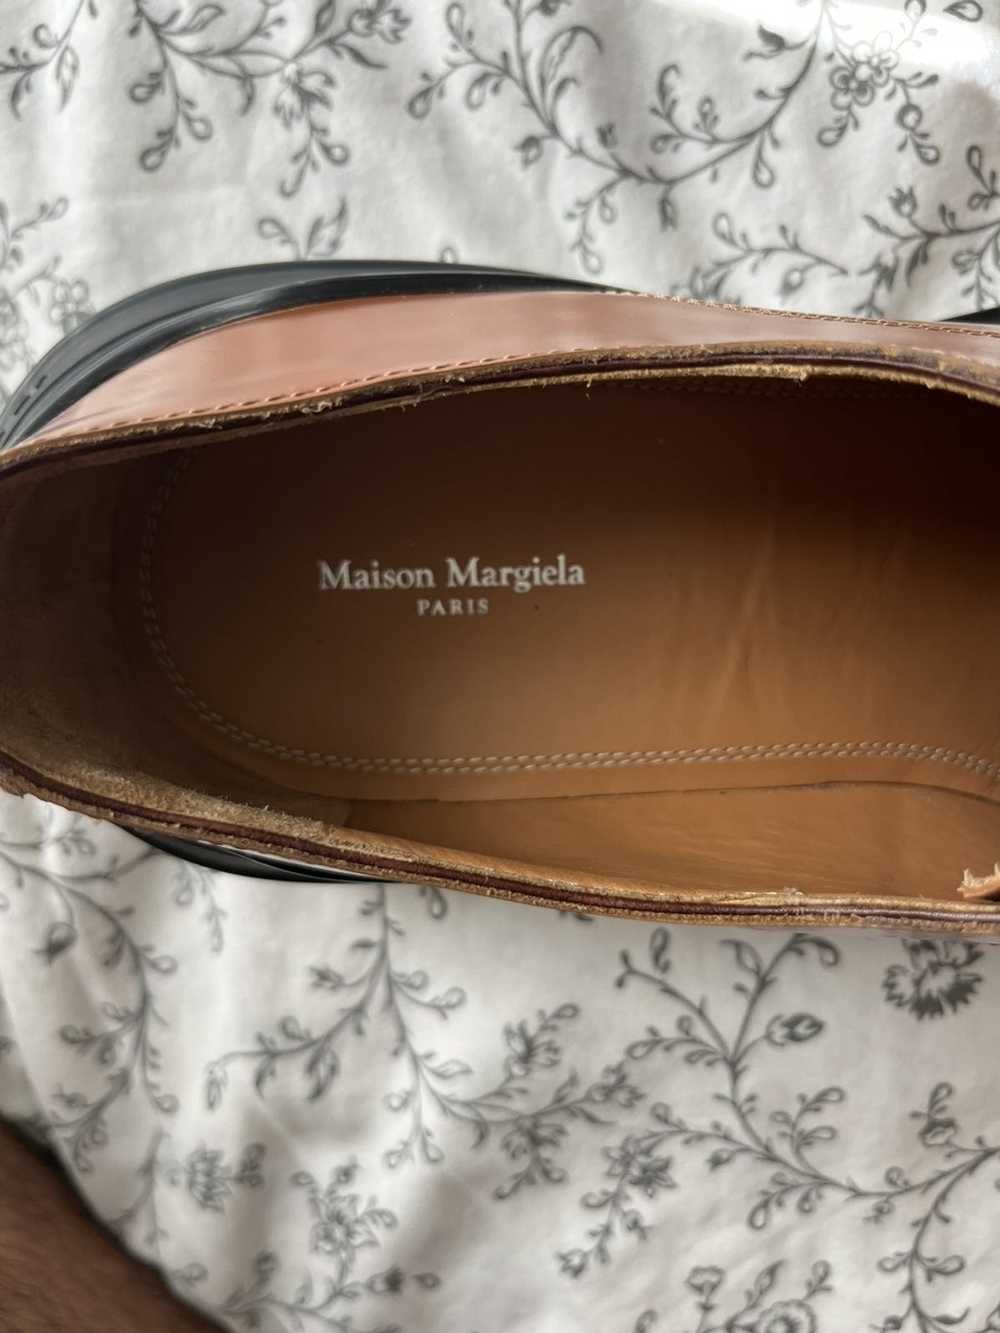 Maison Margiela Maison Margiela dress shoes - image 4